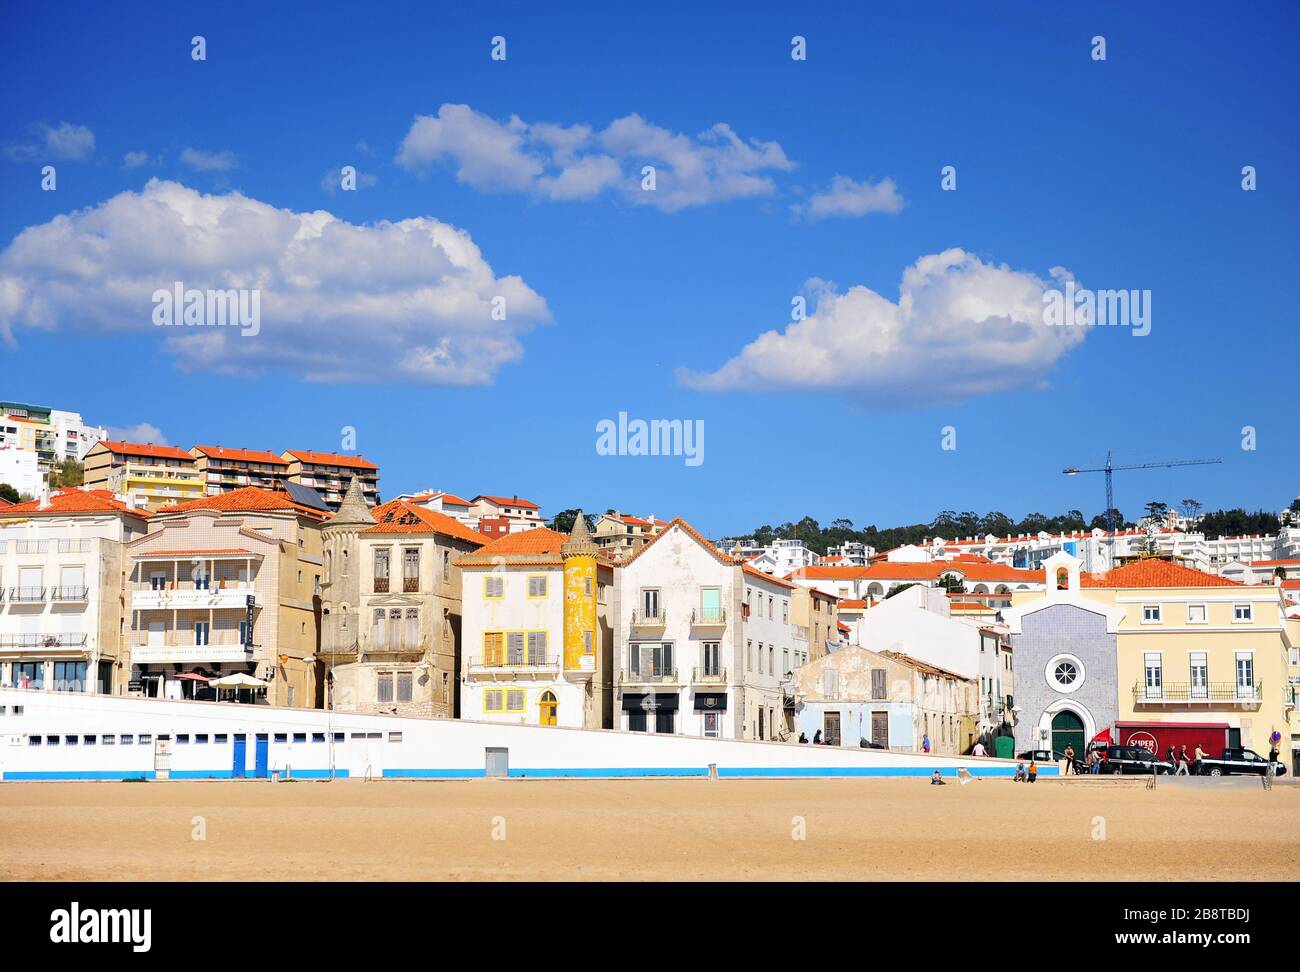 Nazare, Portogallo - 29 marzo 2019: Veduta dell'argine della città di Nazare e della spiaggia centrale. Foto Stock